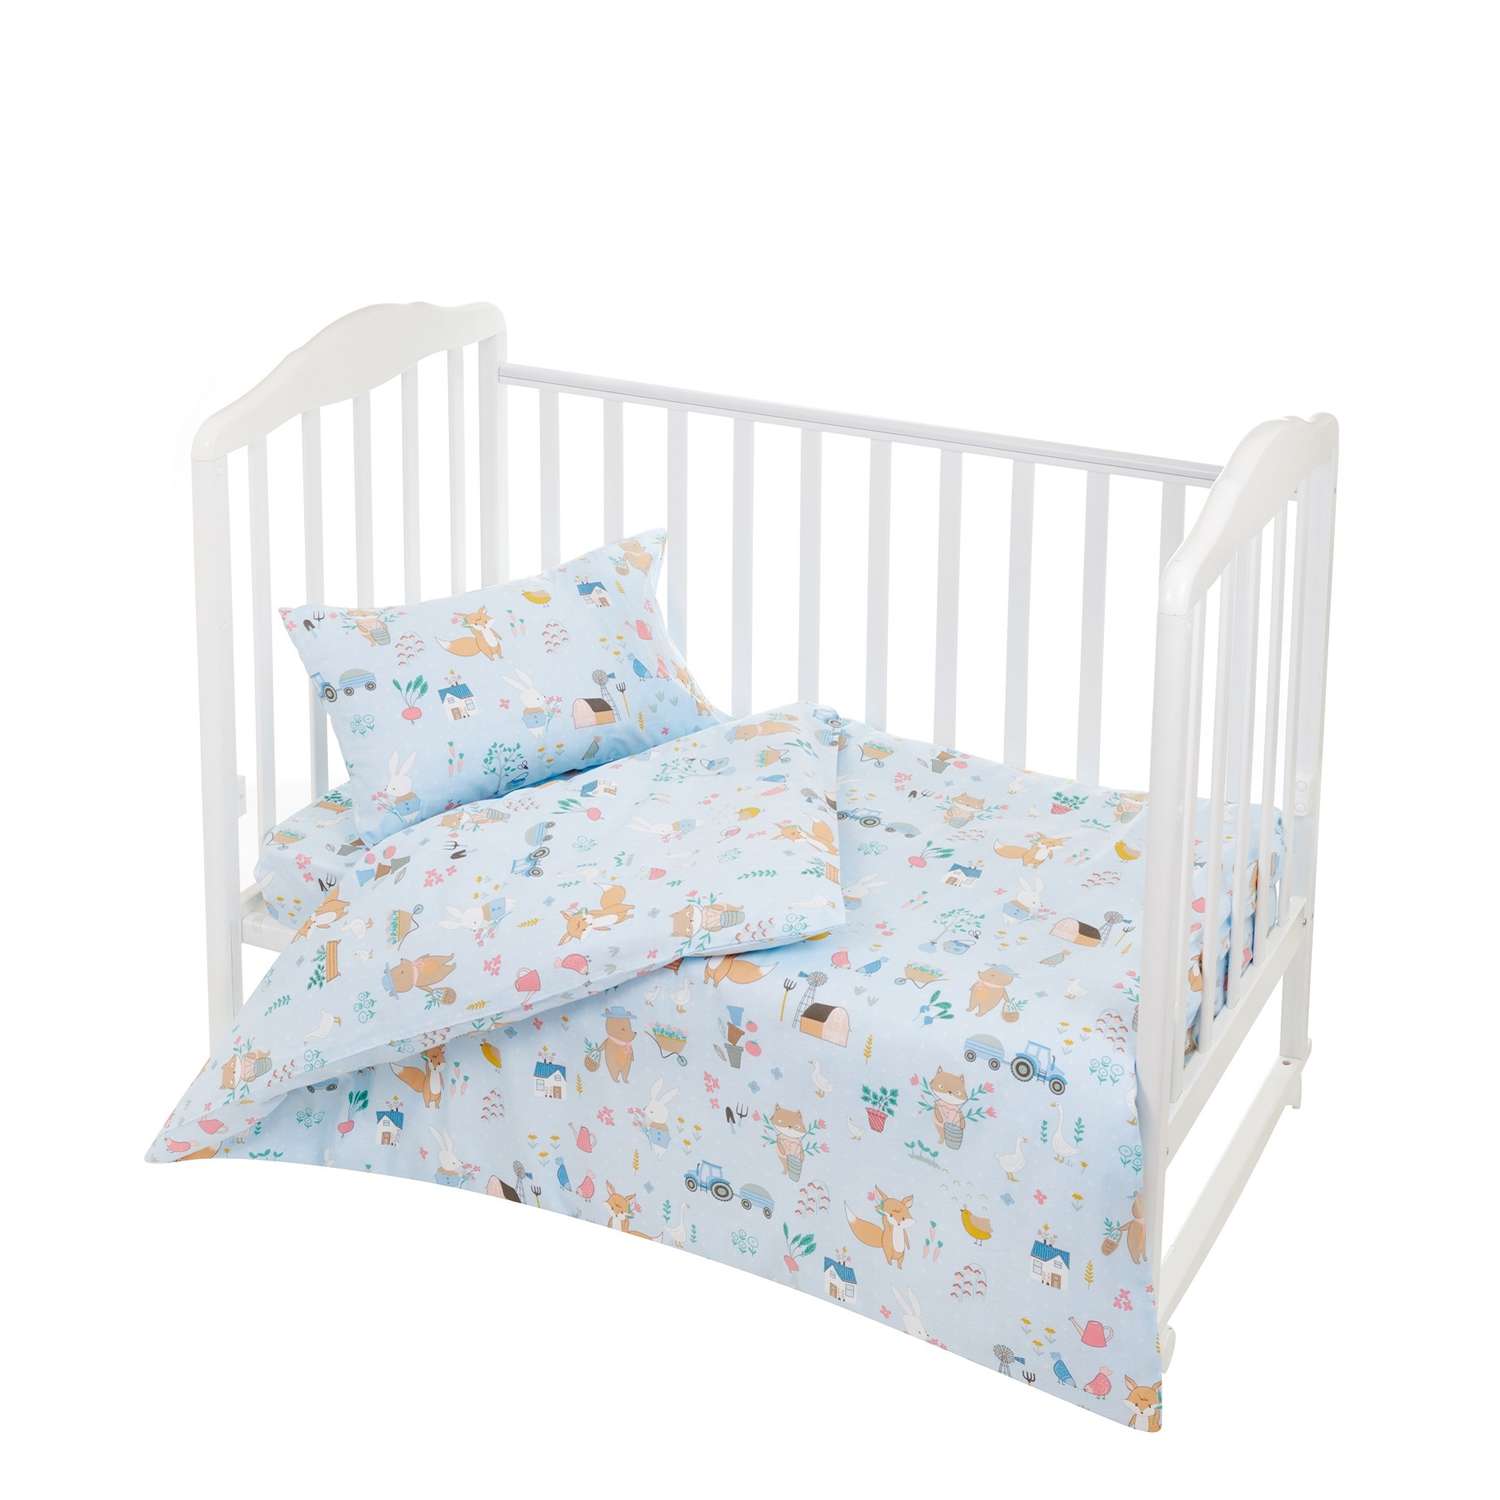 Комплект постельного белья Lemony kids Голубой с рисунком 3 предмета - фото 1